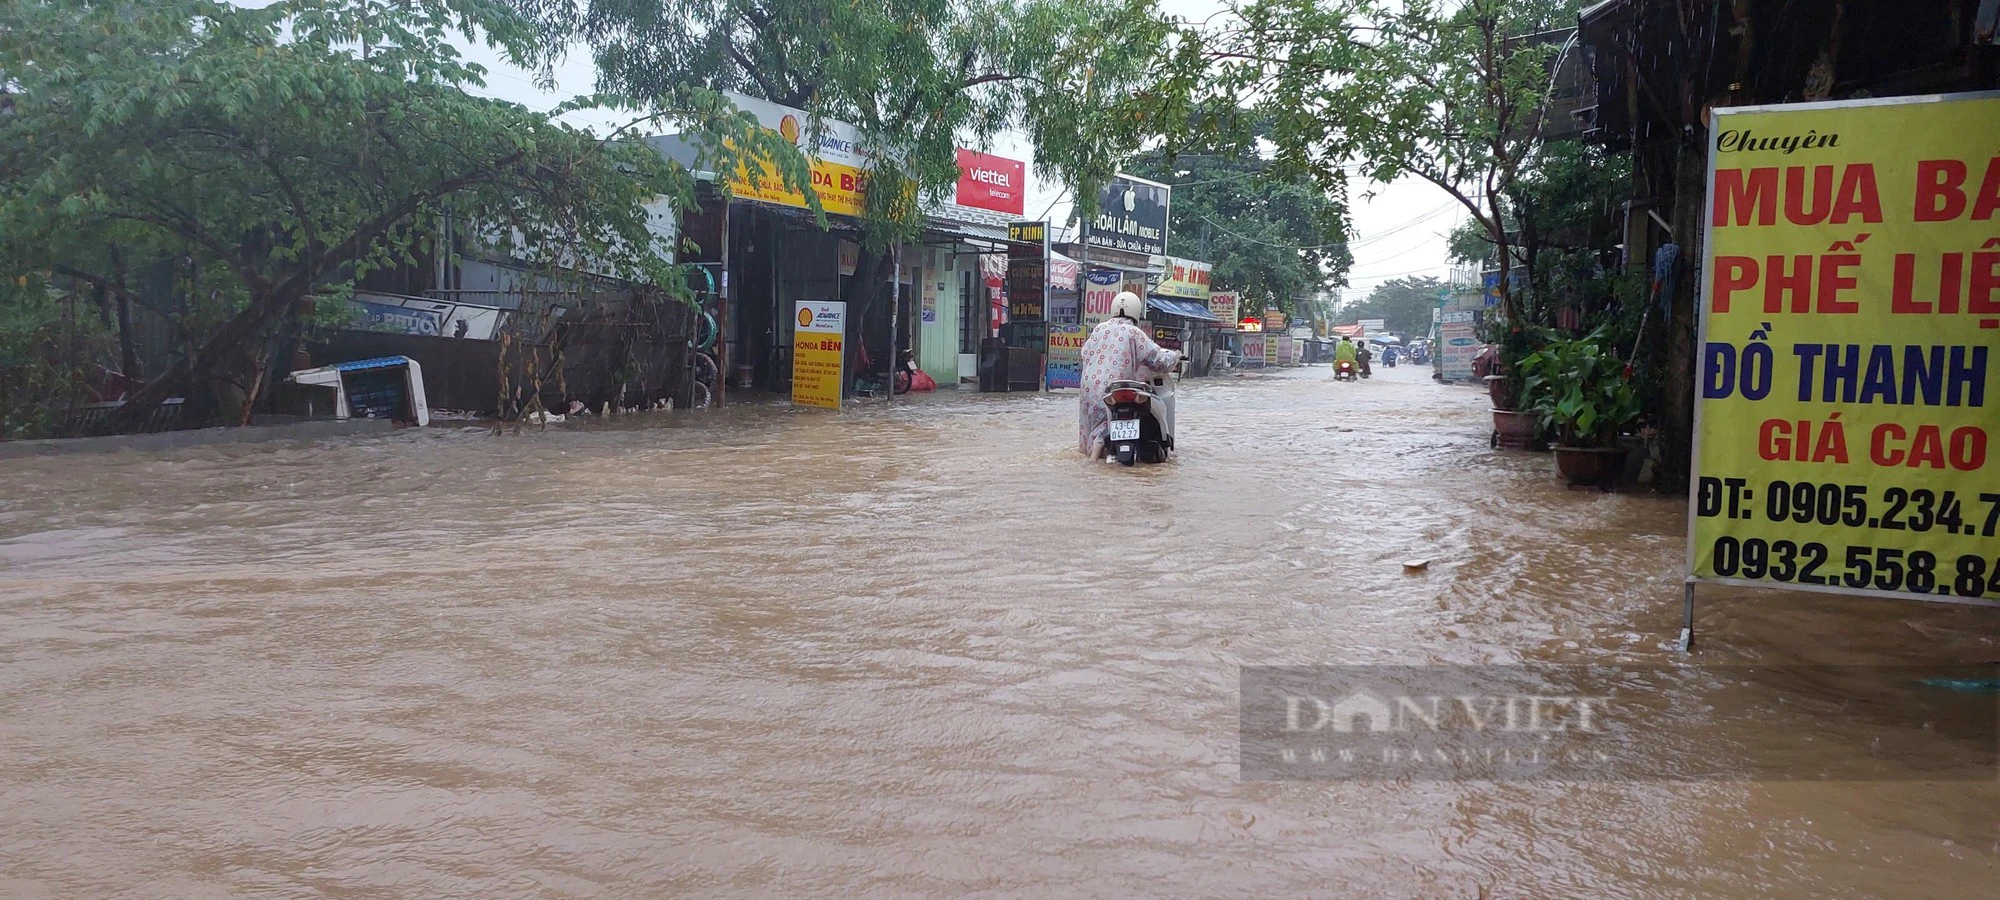 Đường ngập nước lênh láng, người dân chật vật dẫn xe chết máy sau mưa lớn tại Đà Nẵng - Ảnh 8.